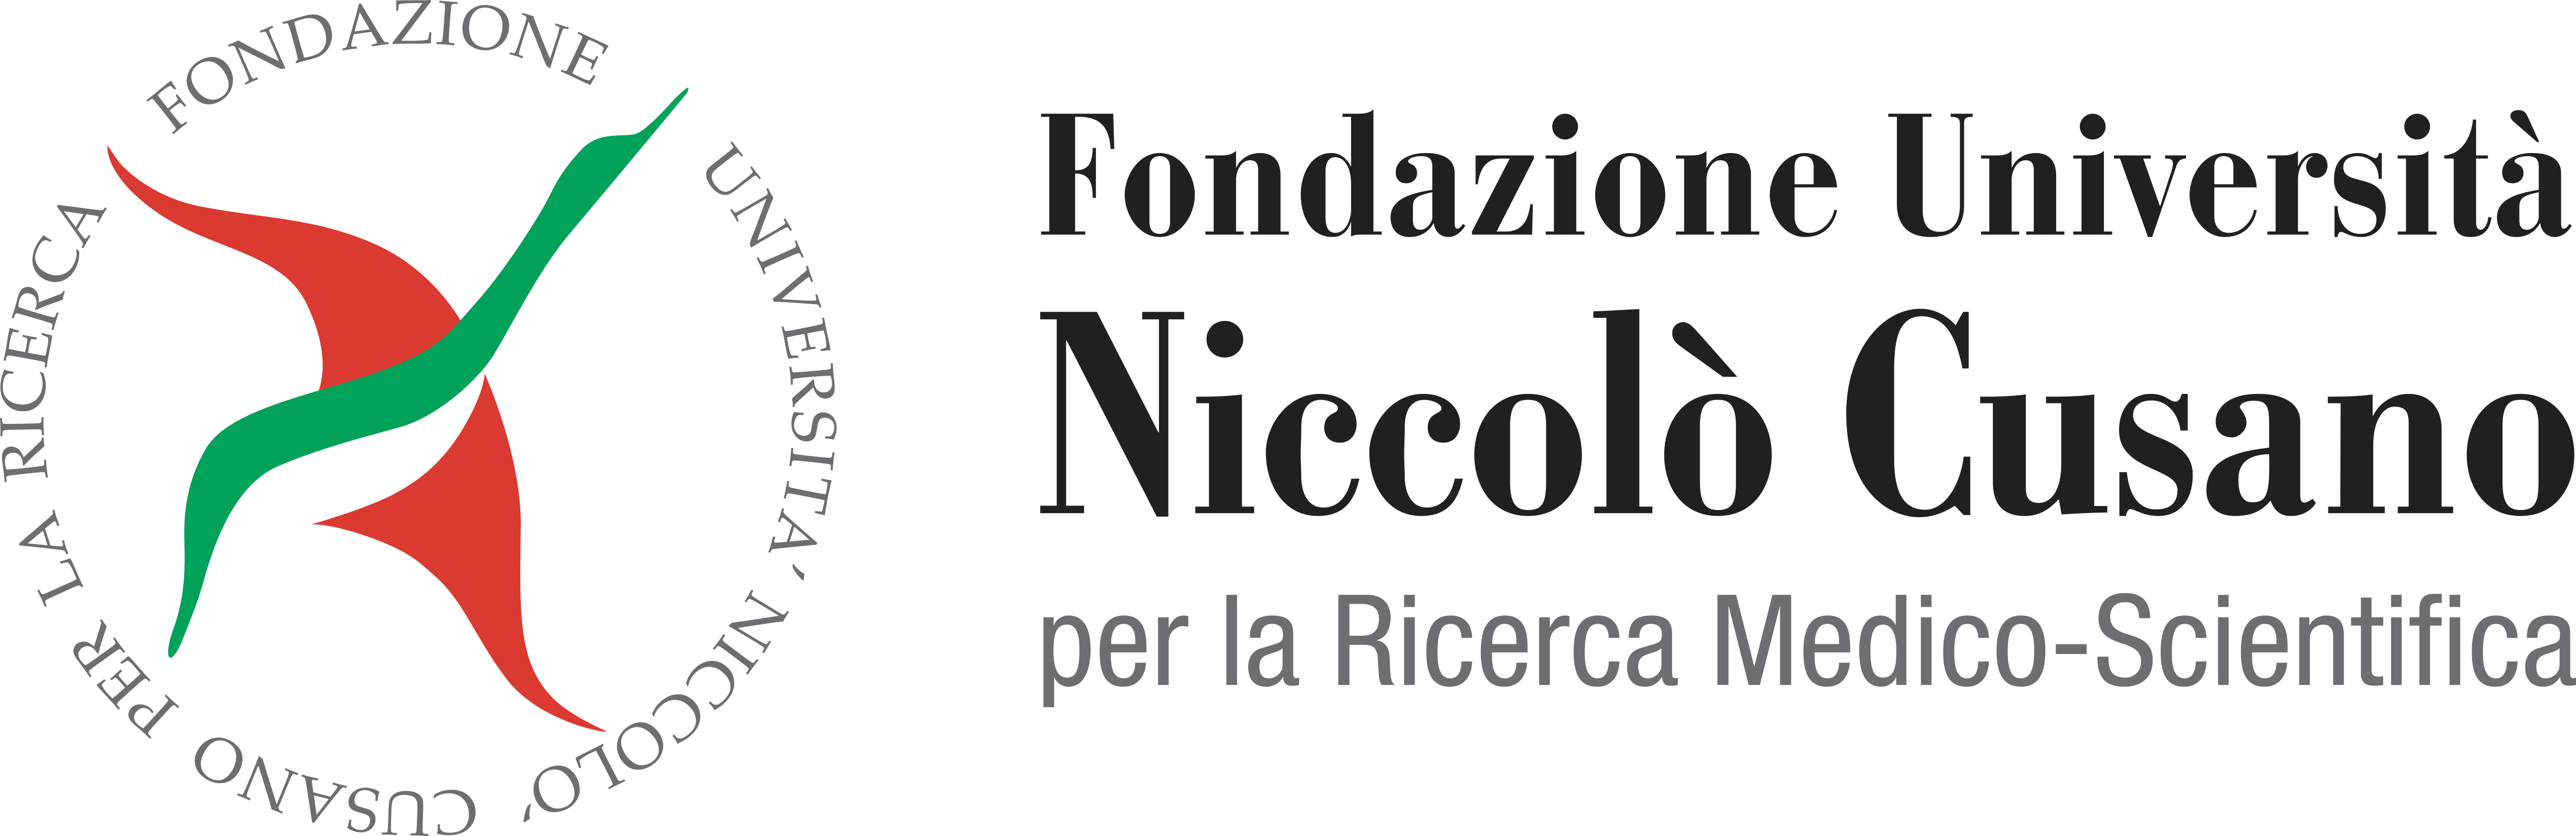 Fondazione Niccolo Cusano